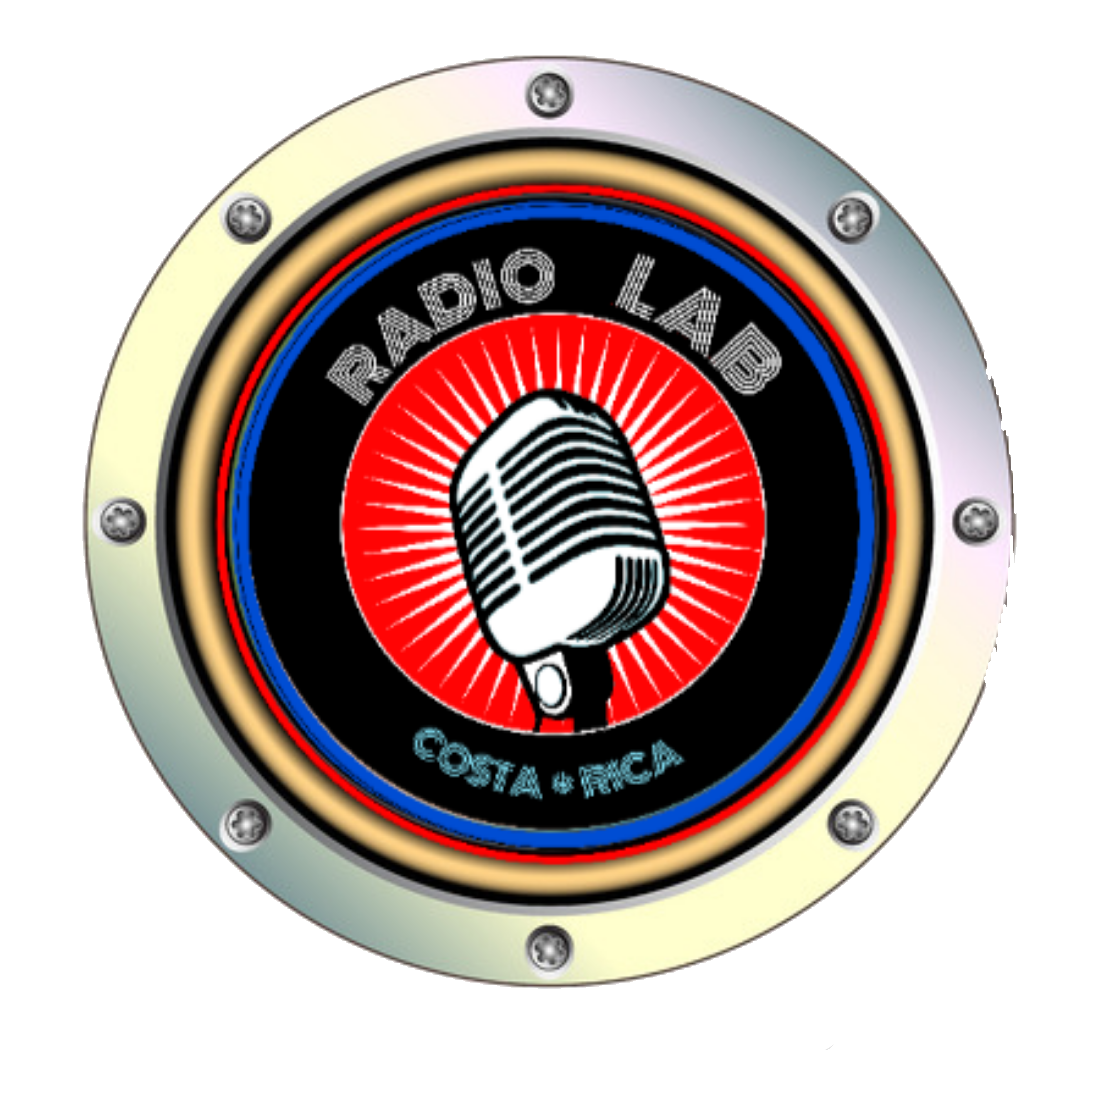 RadioLAB aus Costa Rica